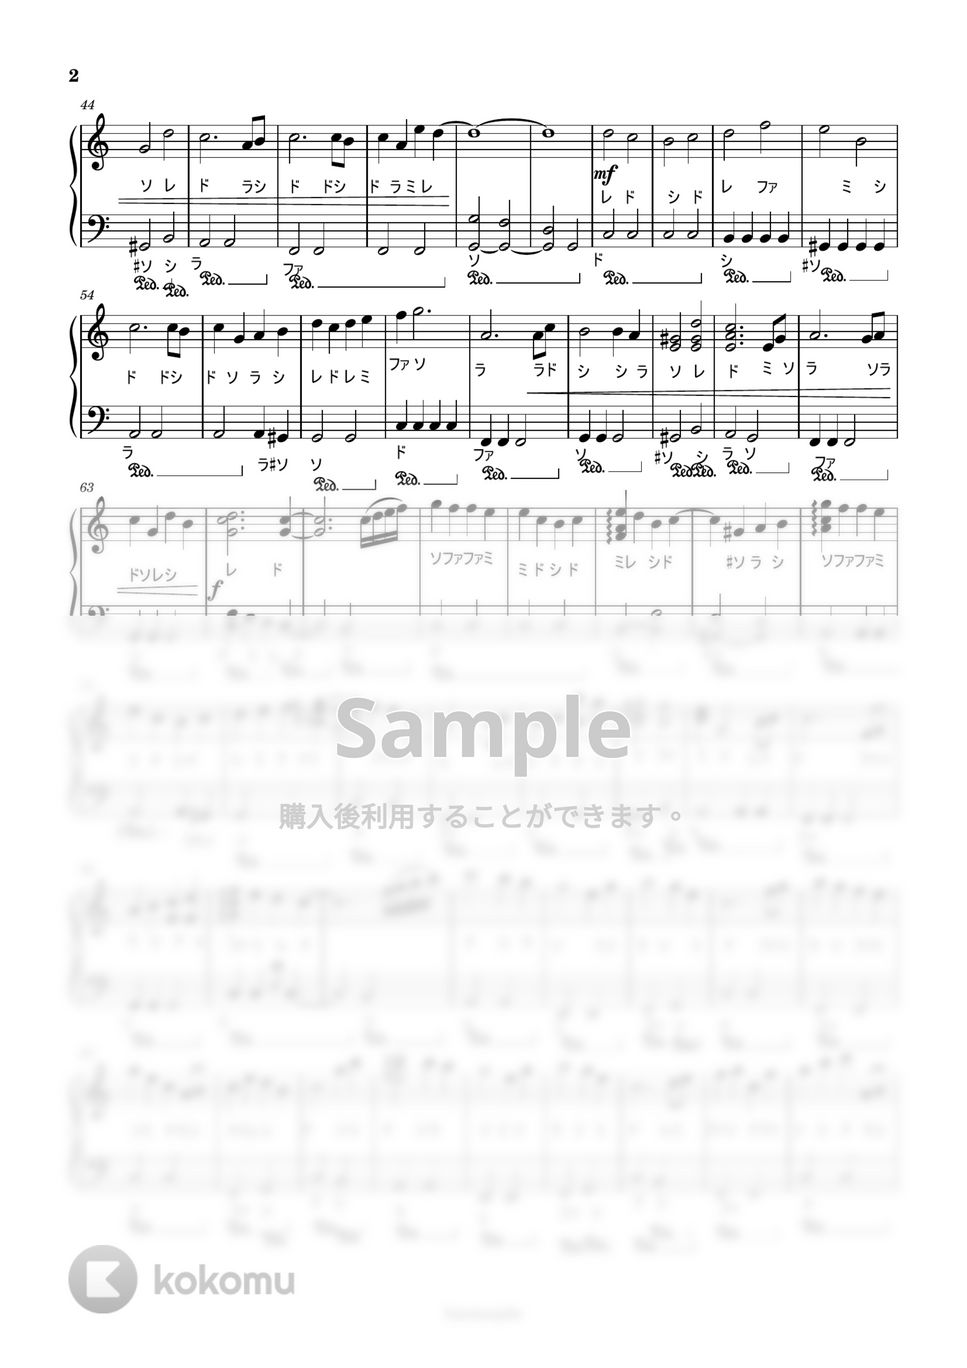 ミステリと言う勿れ - [入門/初級]Far Away フルVer. (ドレミ付) by harmony piano